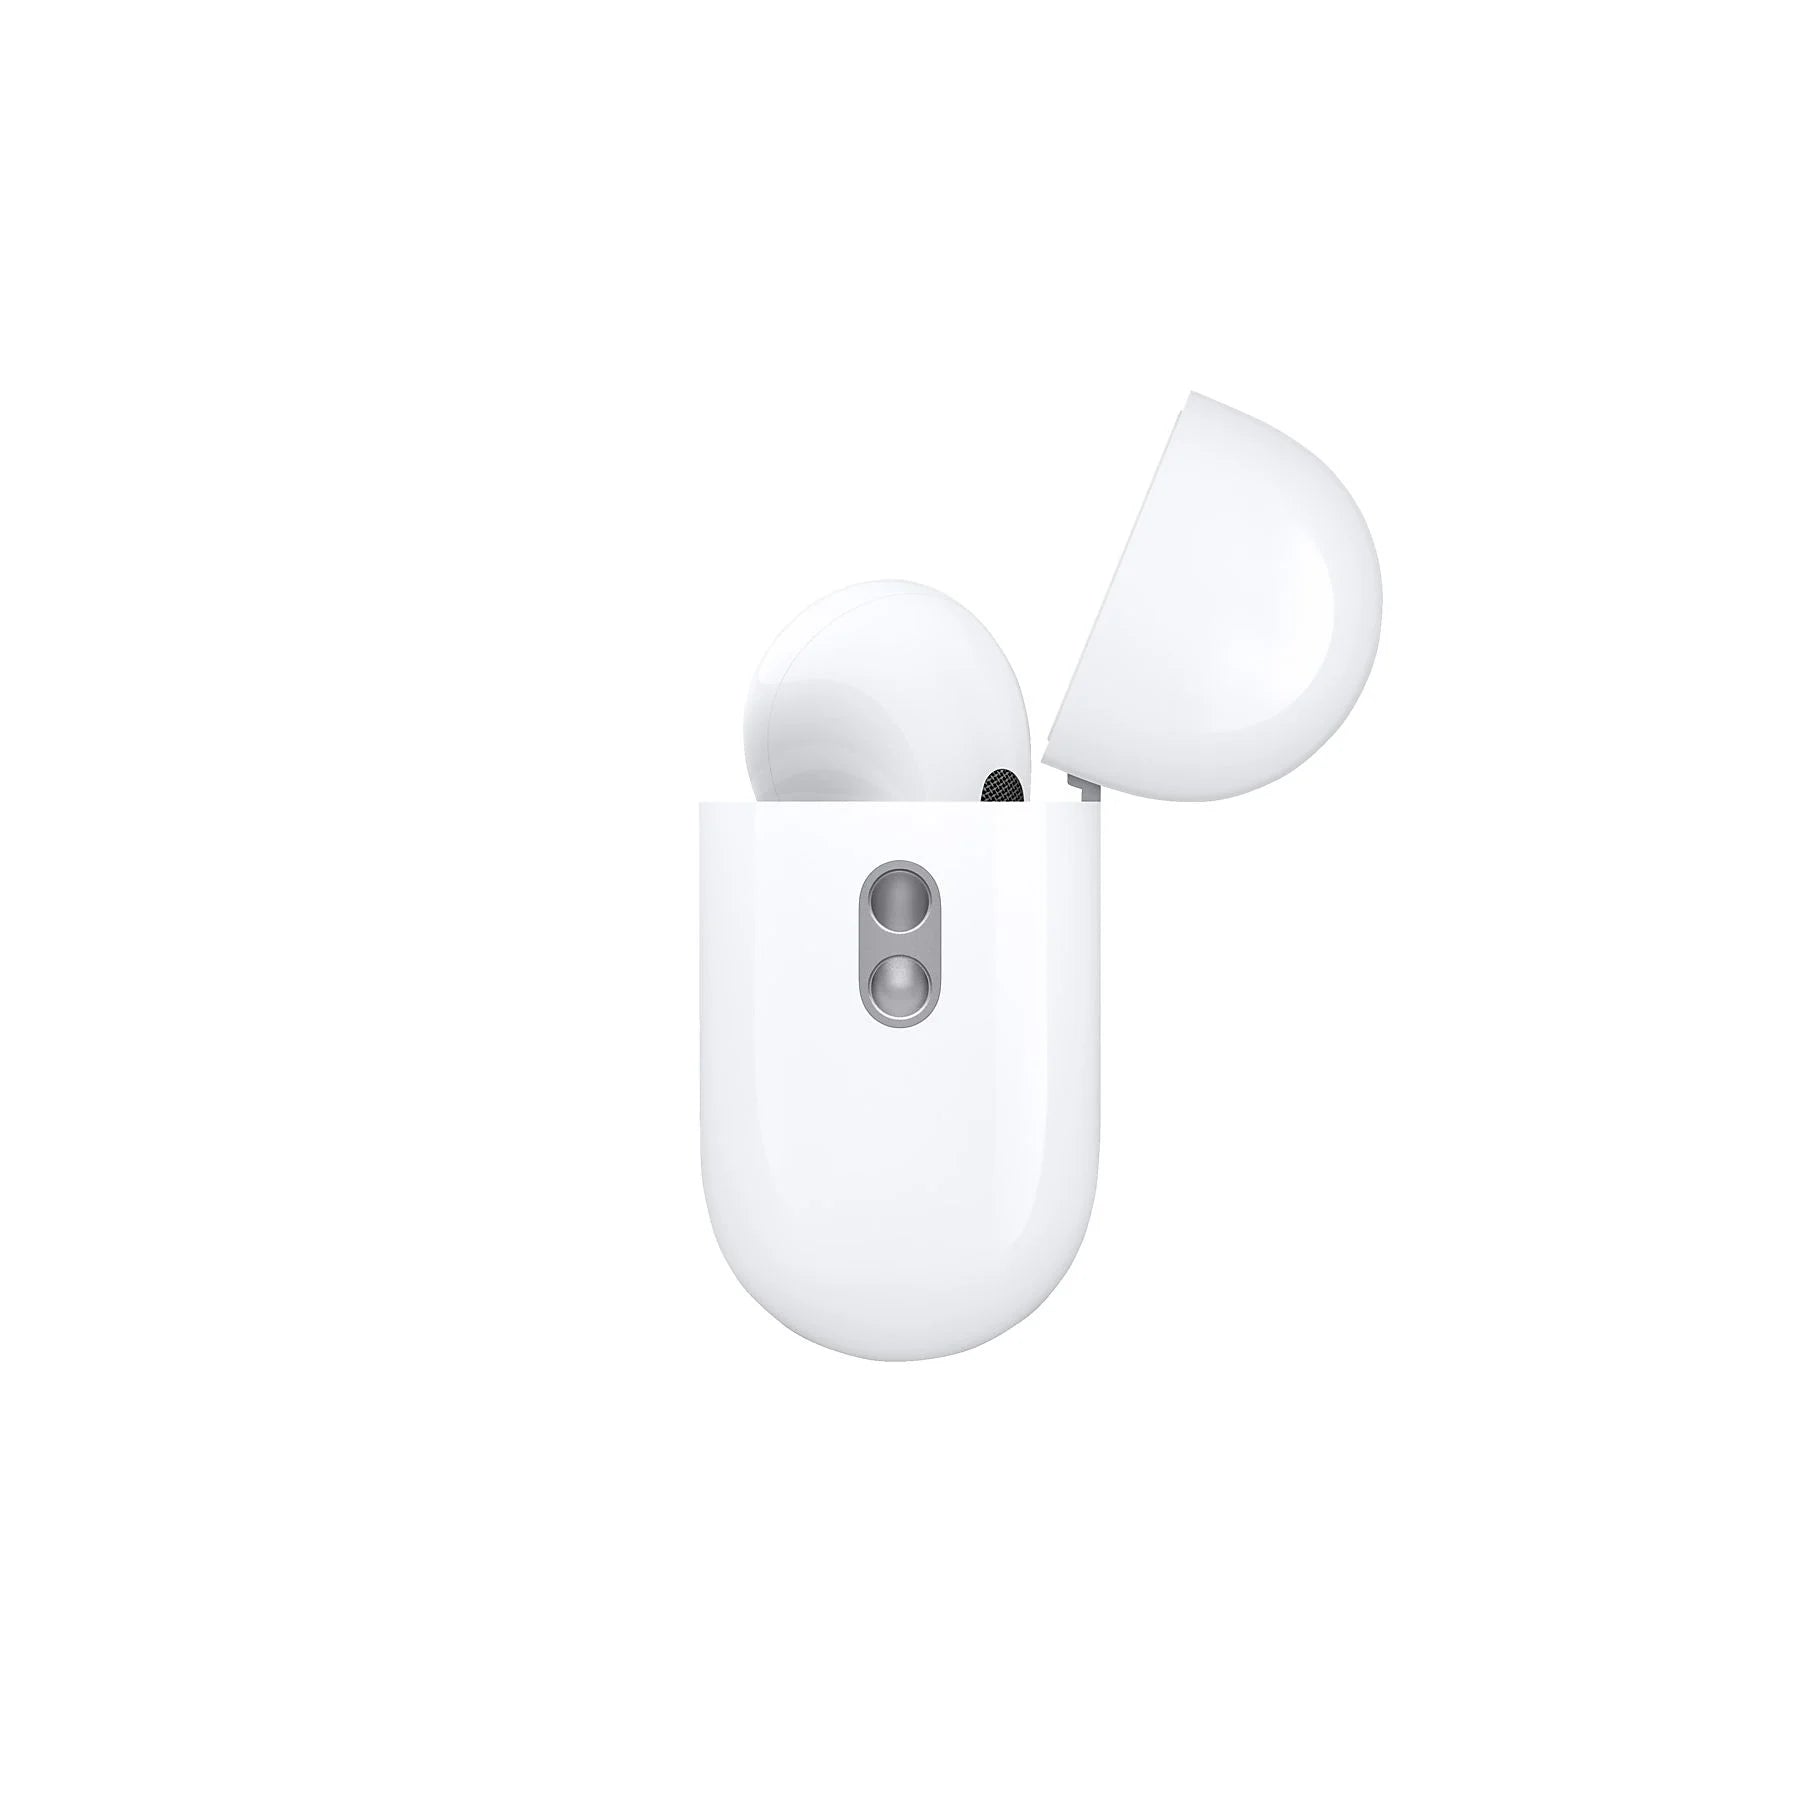 APPLE AirPods Pro (2. Generation) mit MagSafe Case (USB‑C), In-ear Kopfhörer Bluetooth | Lieferung vor Weihnachten - Instock Germany